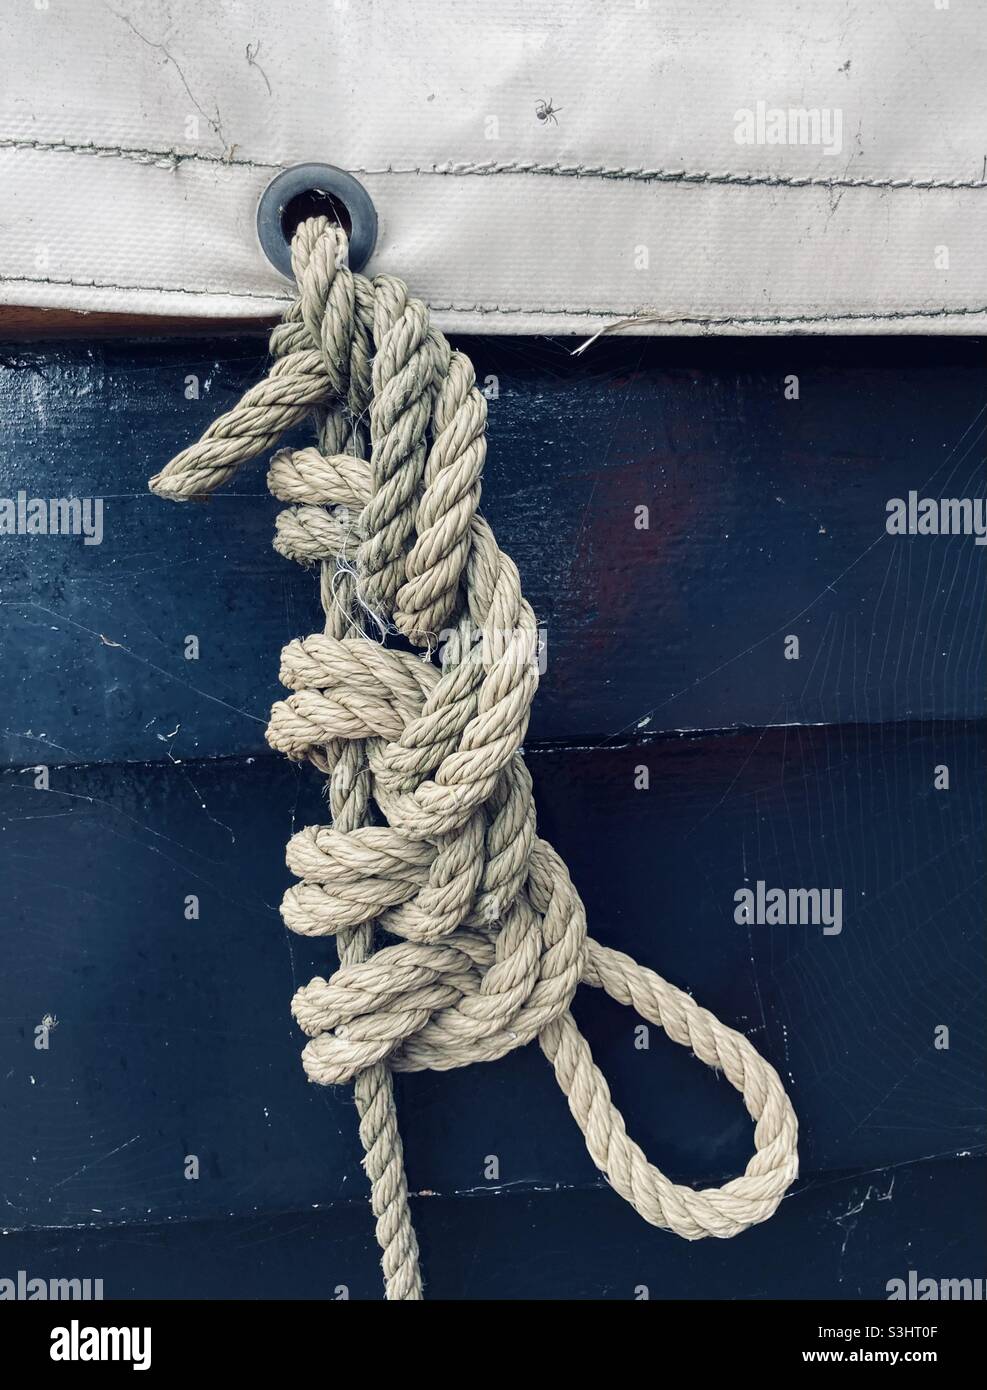 Un nœud complexe fixe la bâche d'un navire Photo Stock - Alamy